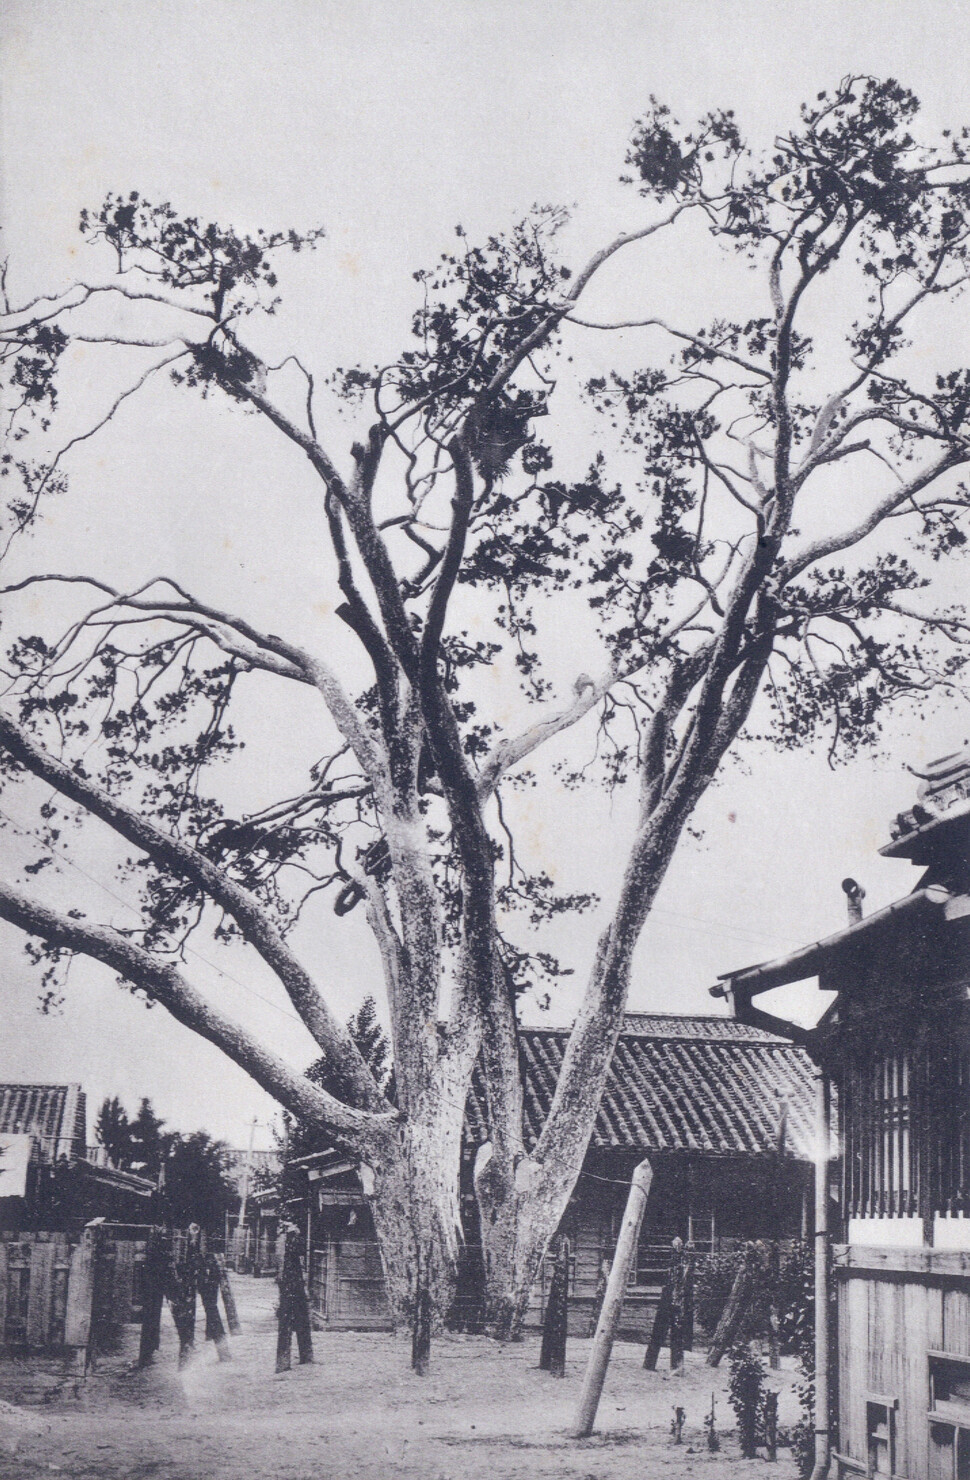 서울 종로구 통의동 백송은 영조의 사저인 창의궁 안에 있던 나무였다. 1926년 창의궁이 일제의 동양척식주식회사 사택으로 바뀐 뒤 백송.